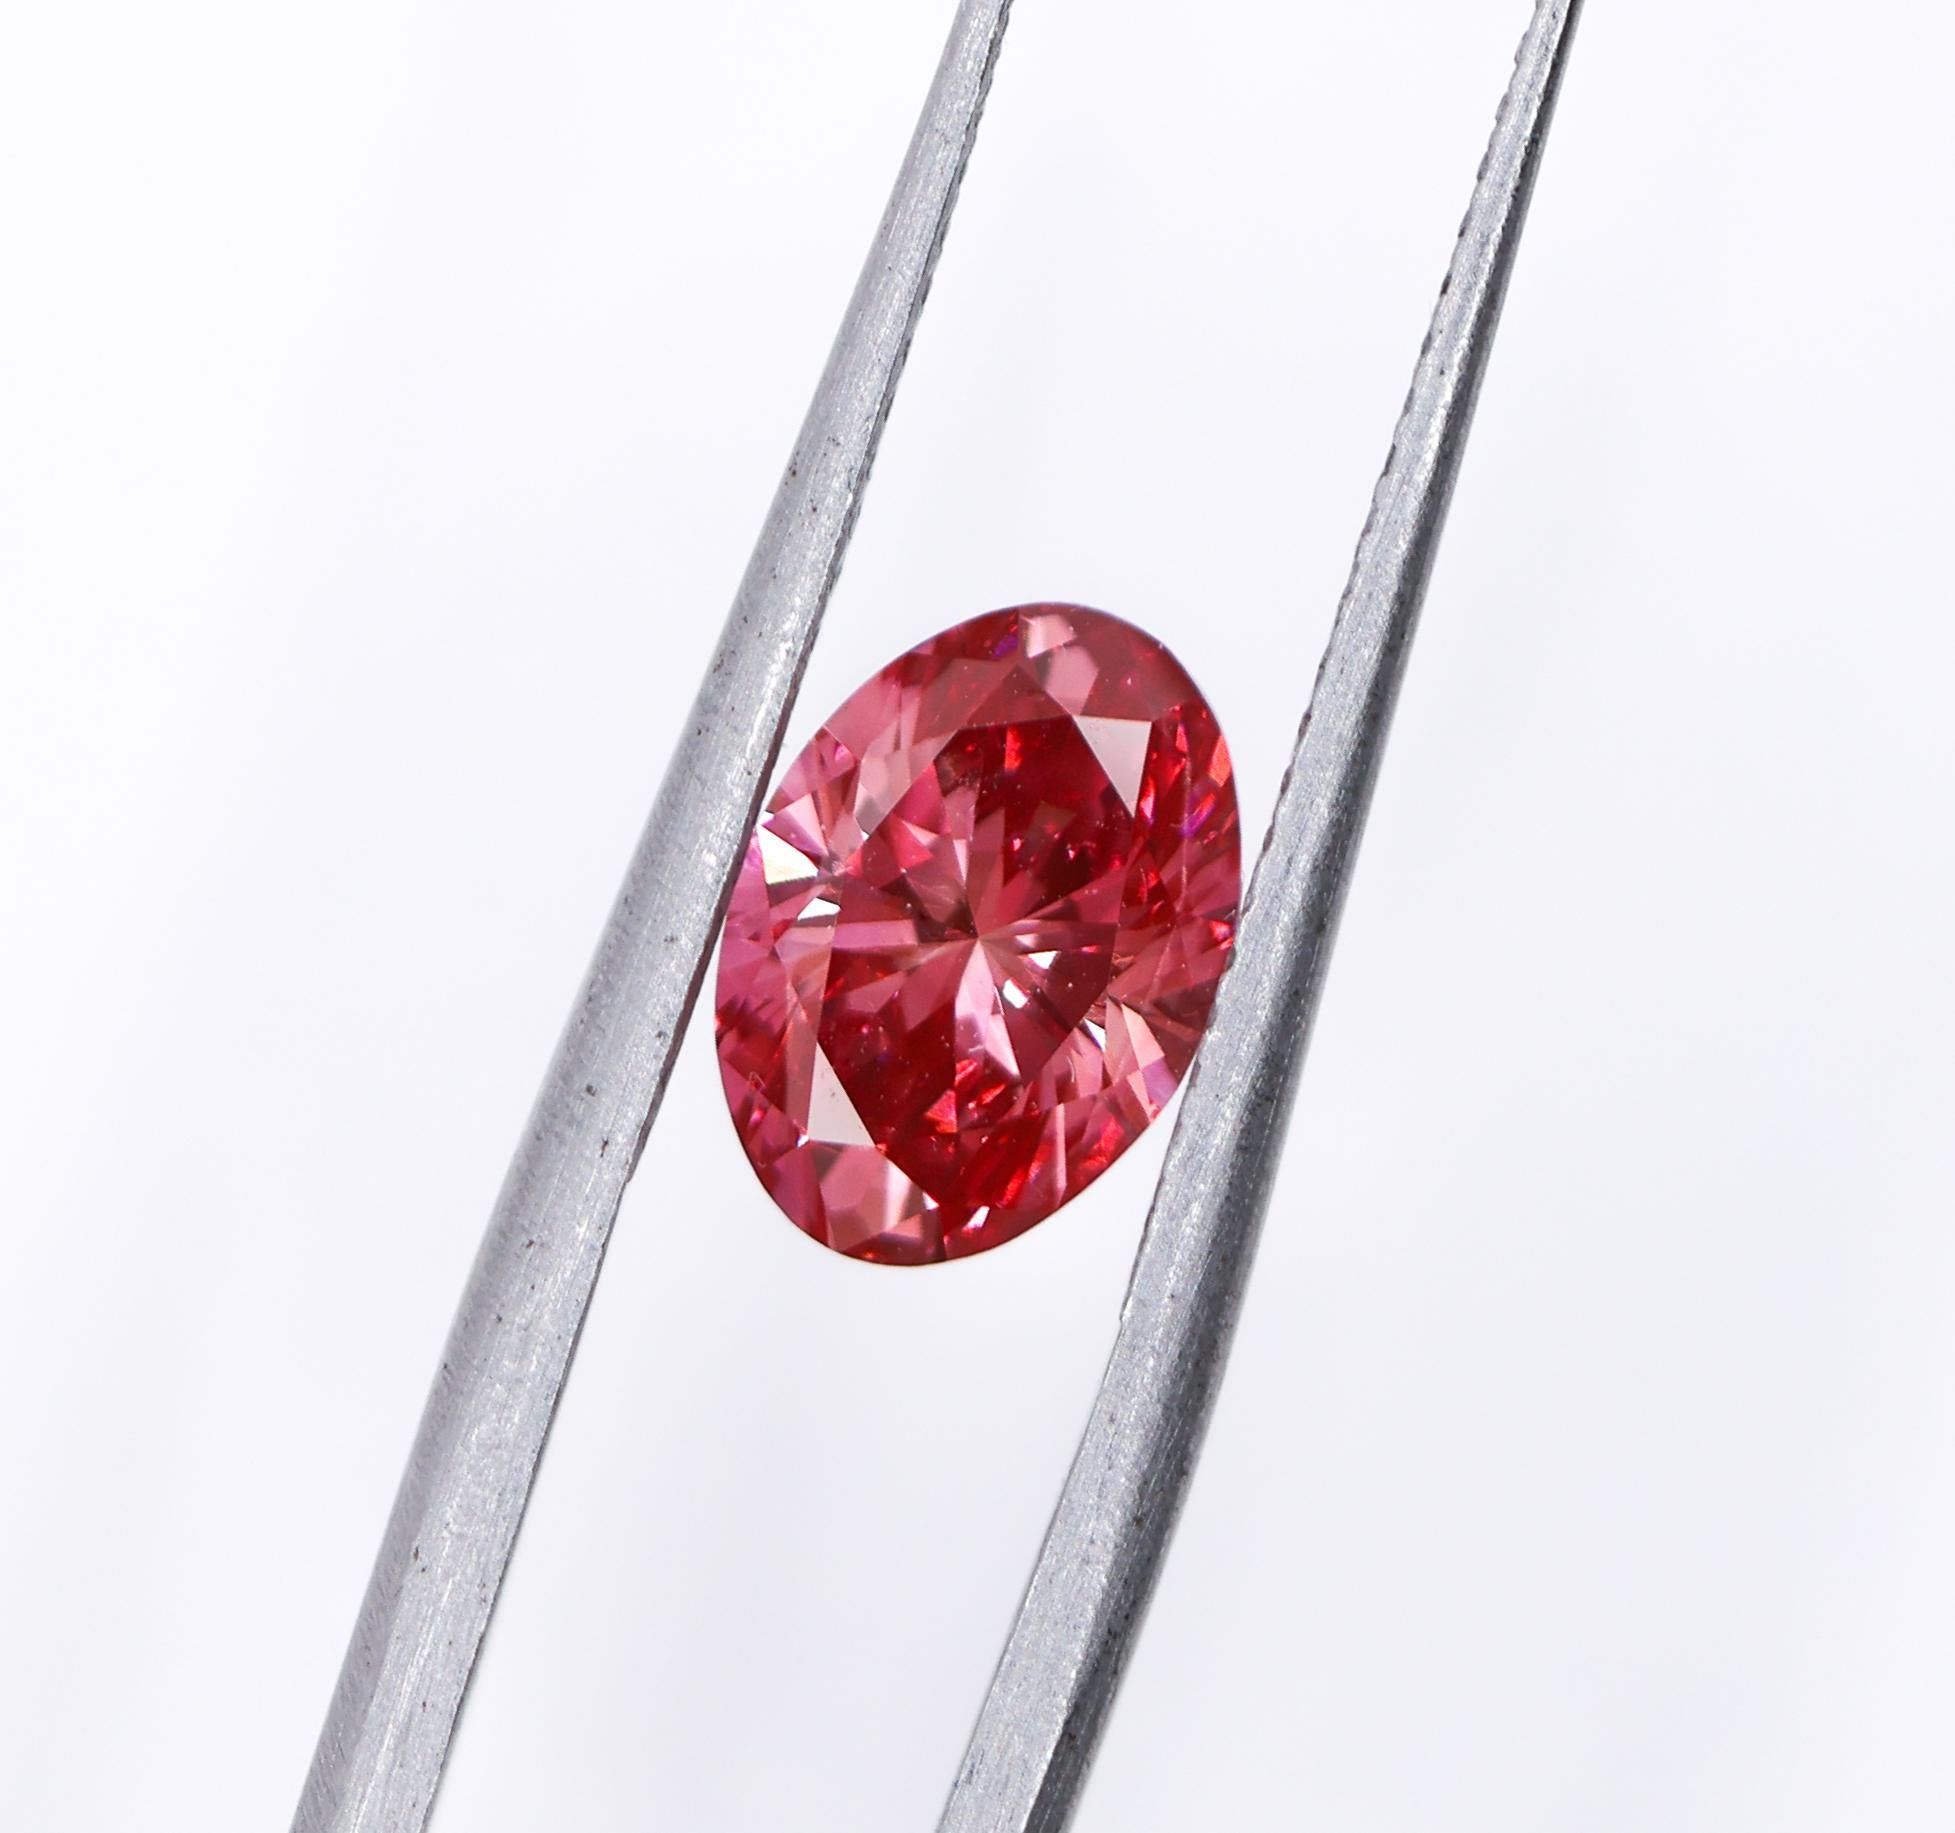 Nous sommes ravis de vous présenter ce magnifique diamant rose naturel extrait de la terre ! Ce diamant est traité au HPHT, ce qui lui confère une superbe couleur rose vif. Une taille fabuleuse pour une bague de fiançailles ou une pièce d'apparat